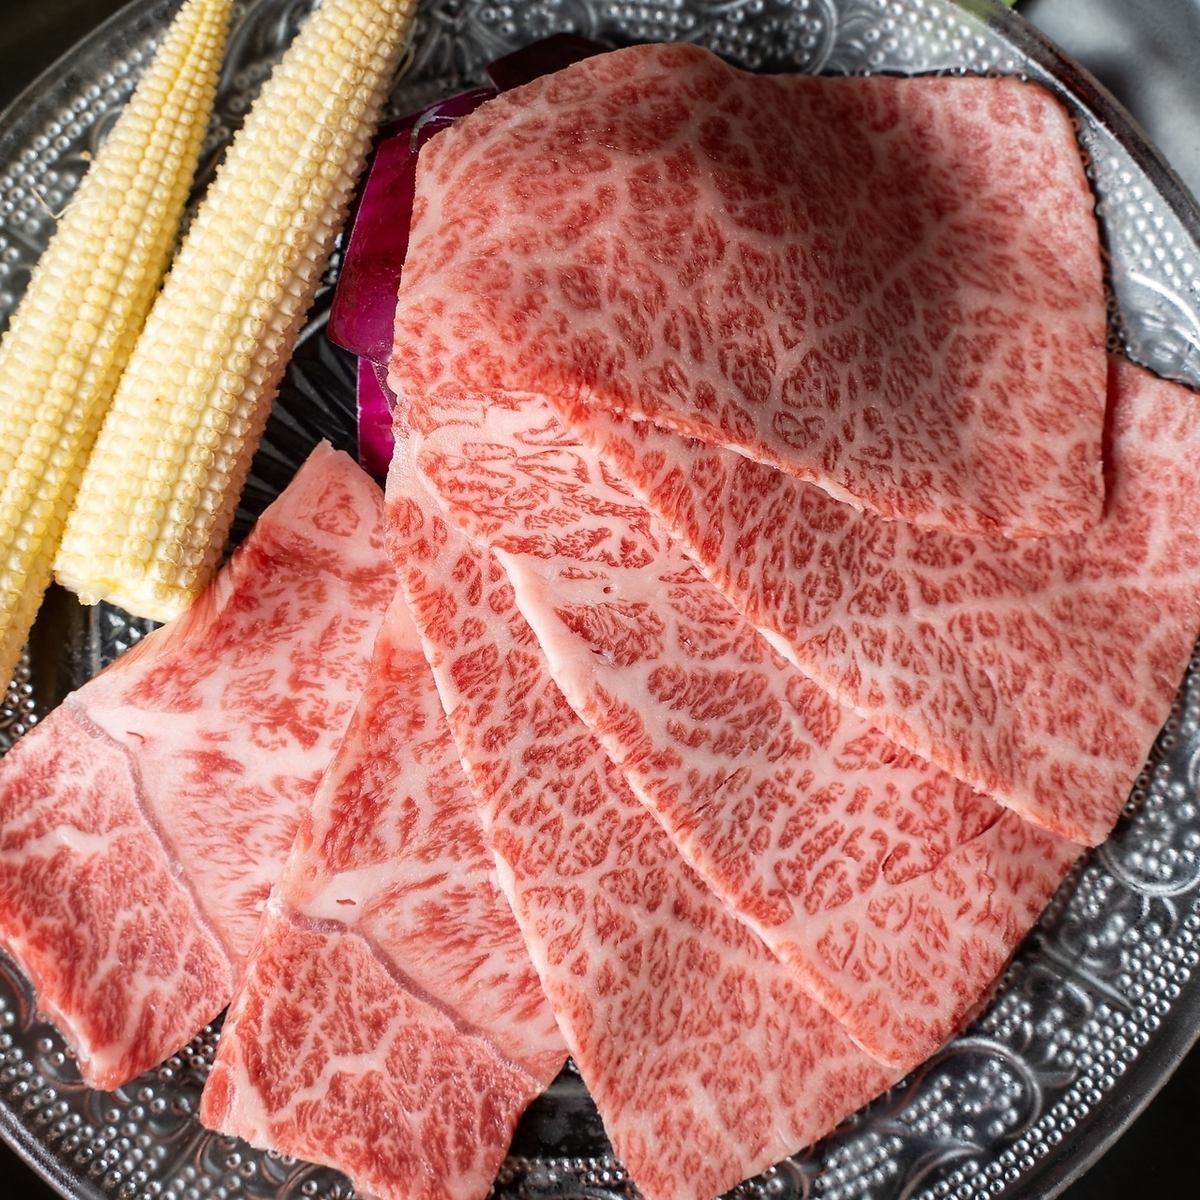 請享用僅使用優質A4廣島牛的烤肉。